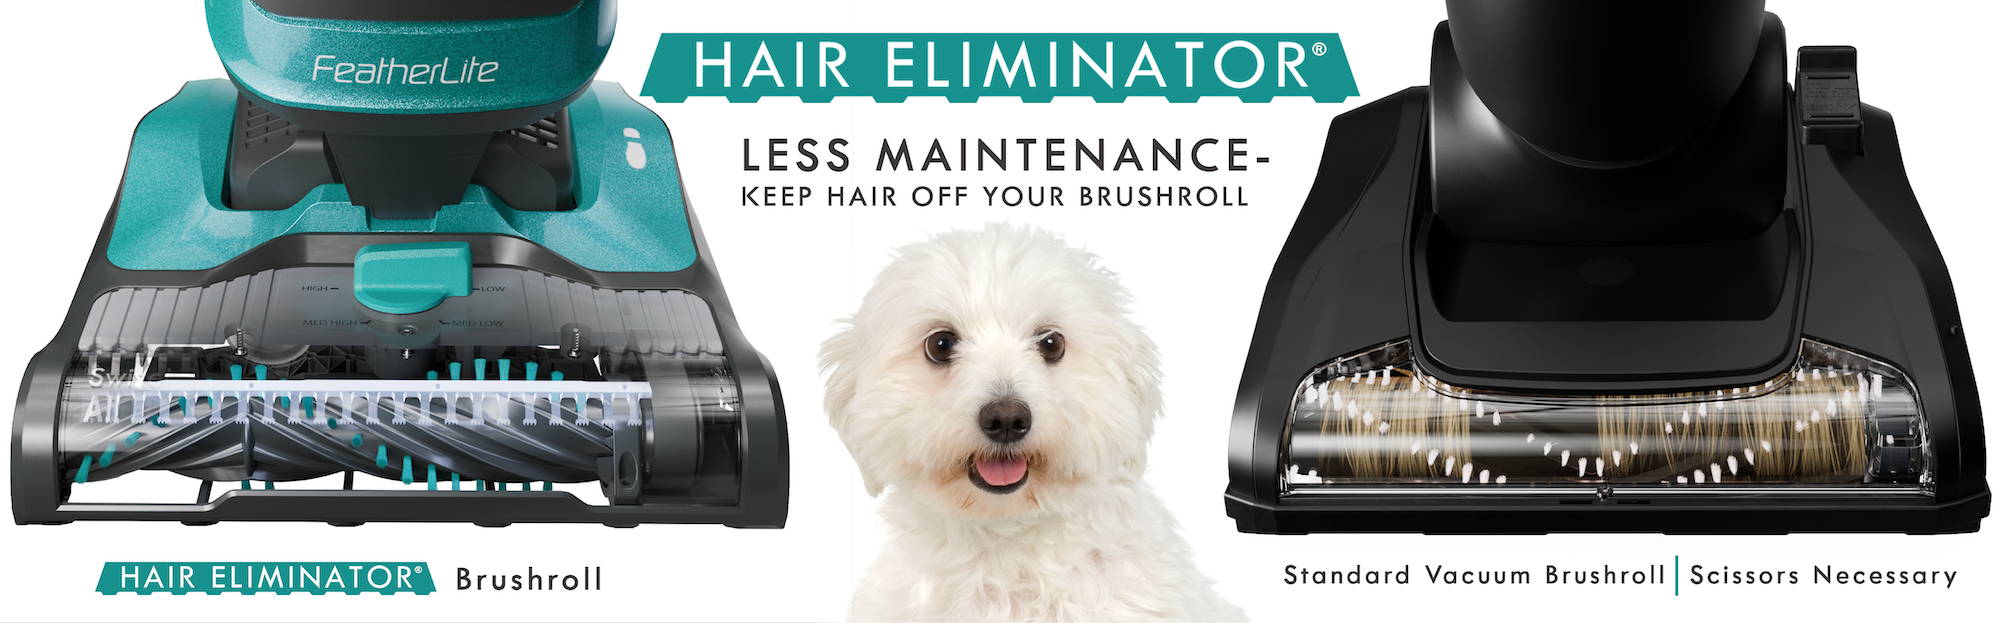 Hair Eliminator Brushroll Banner